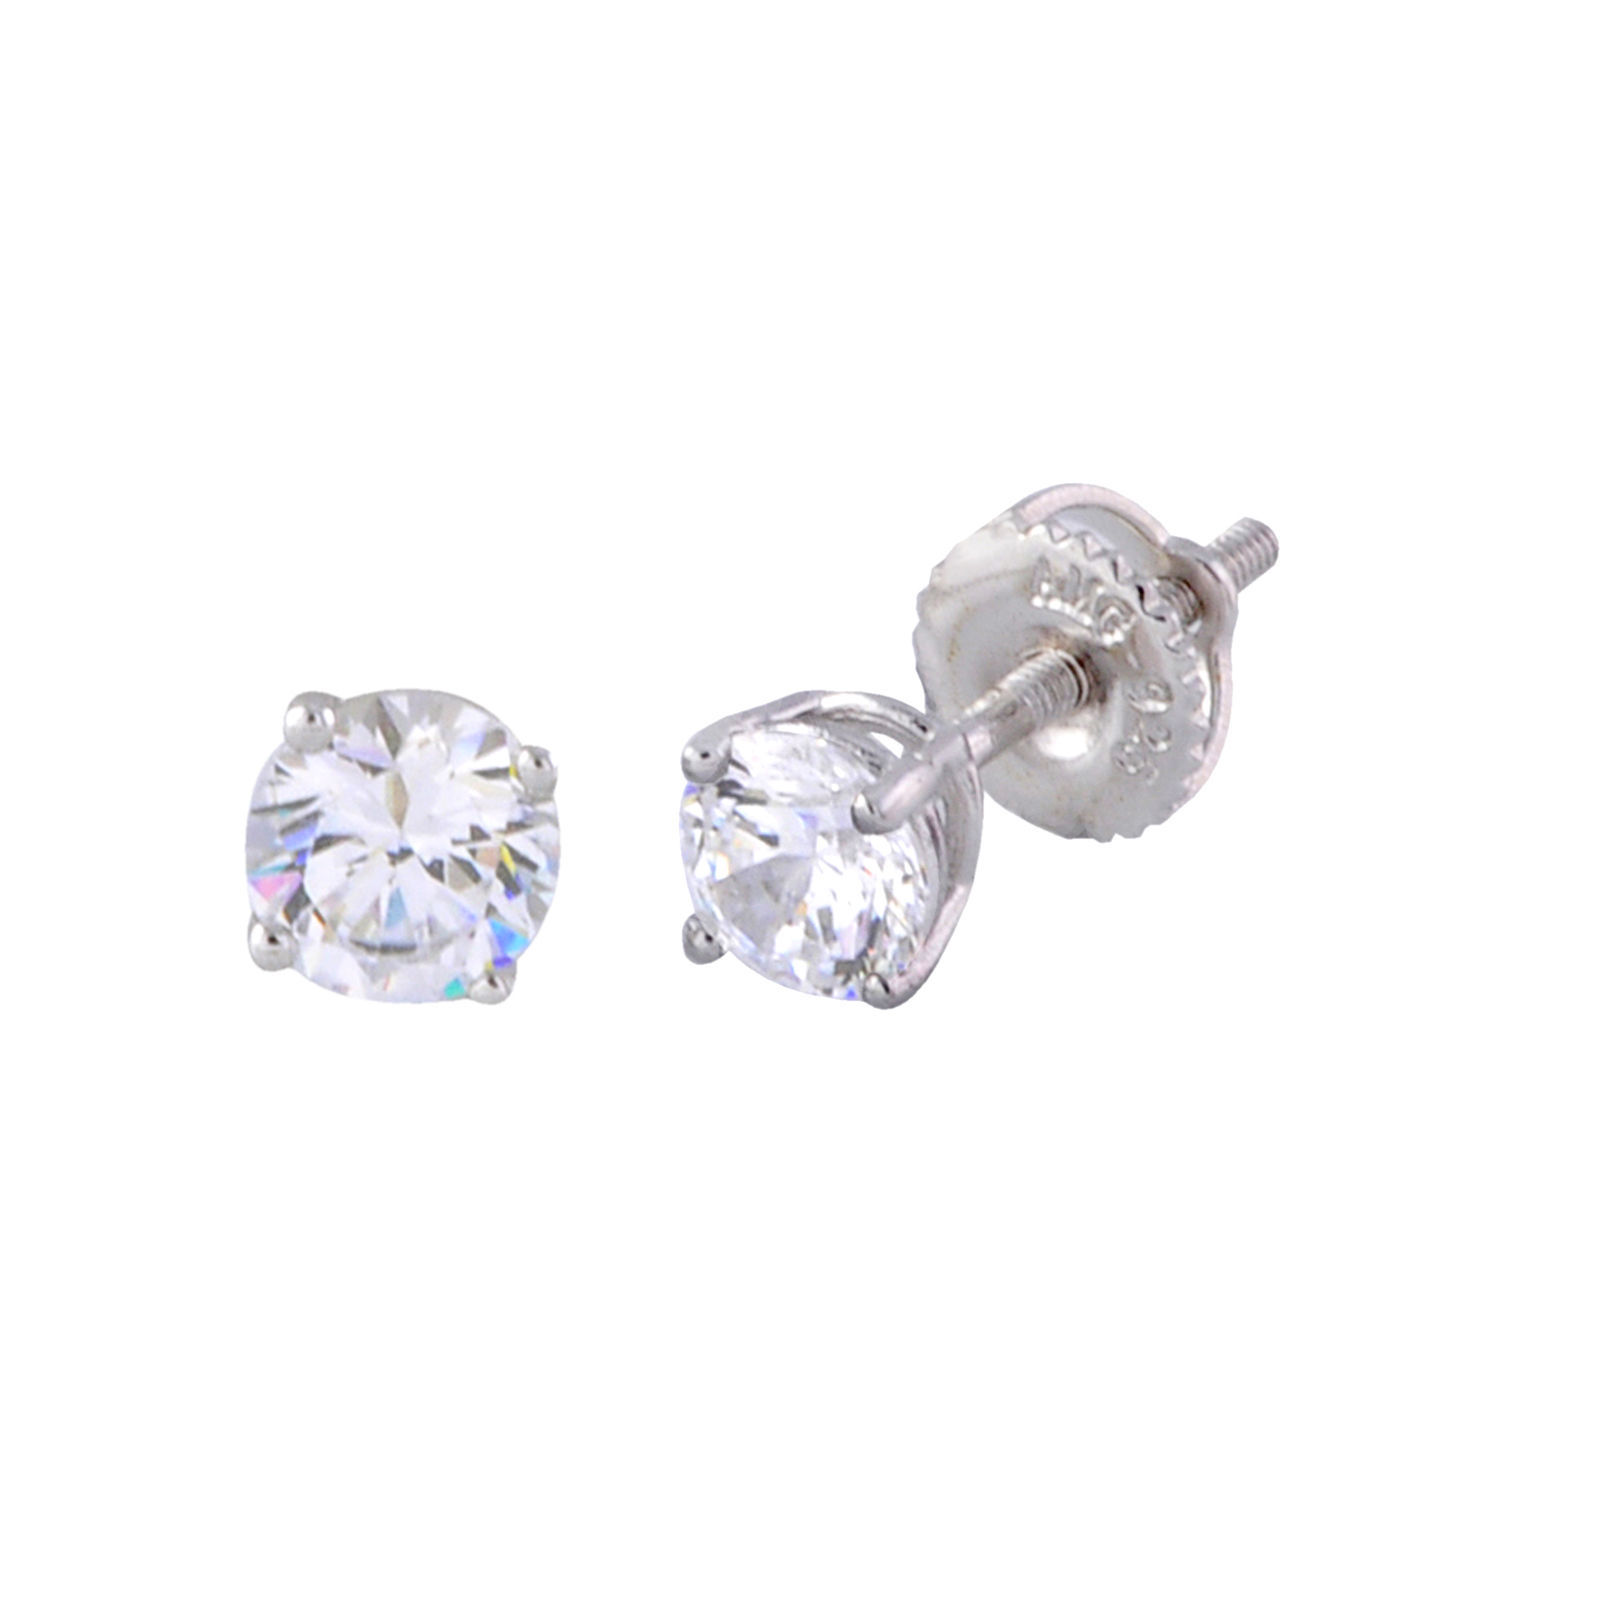 Sterling Silver Stud Earrings AAAAA Grade Round Cubic Zirconia Stones Screwbacks - $21.92 - $47.20